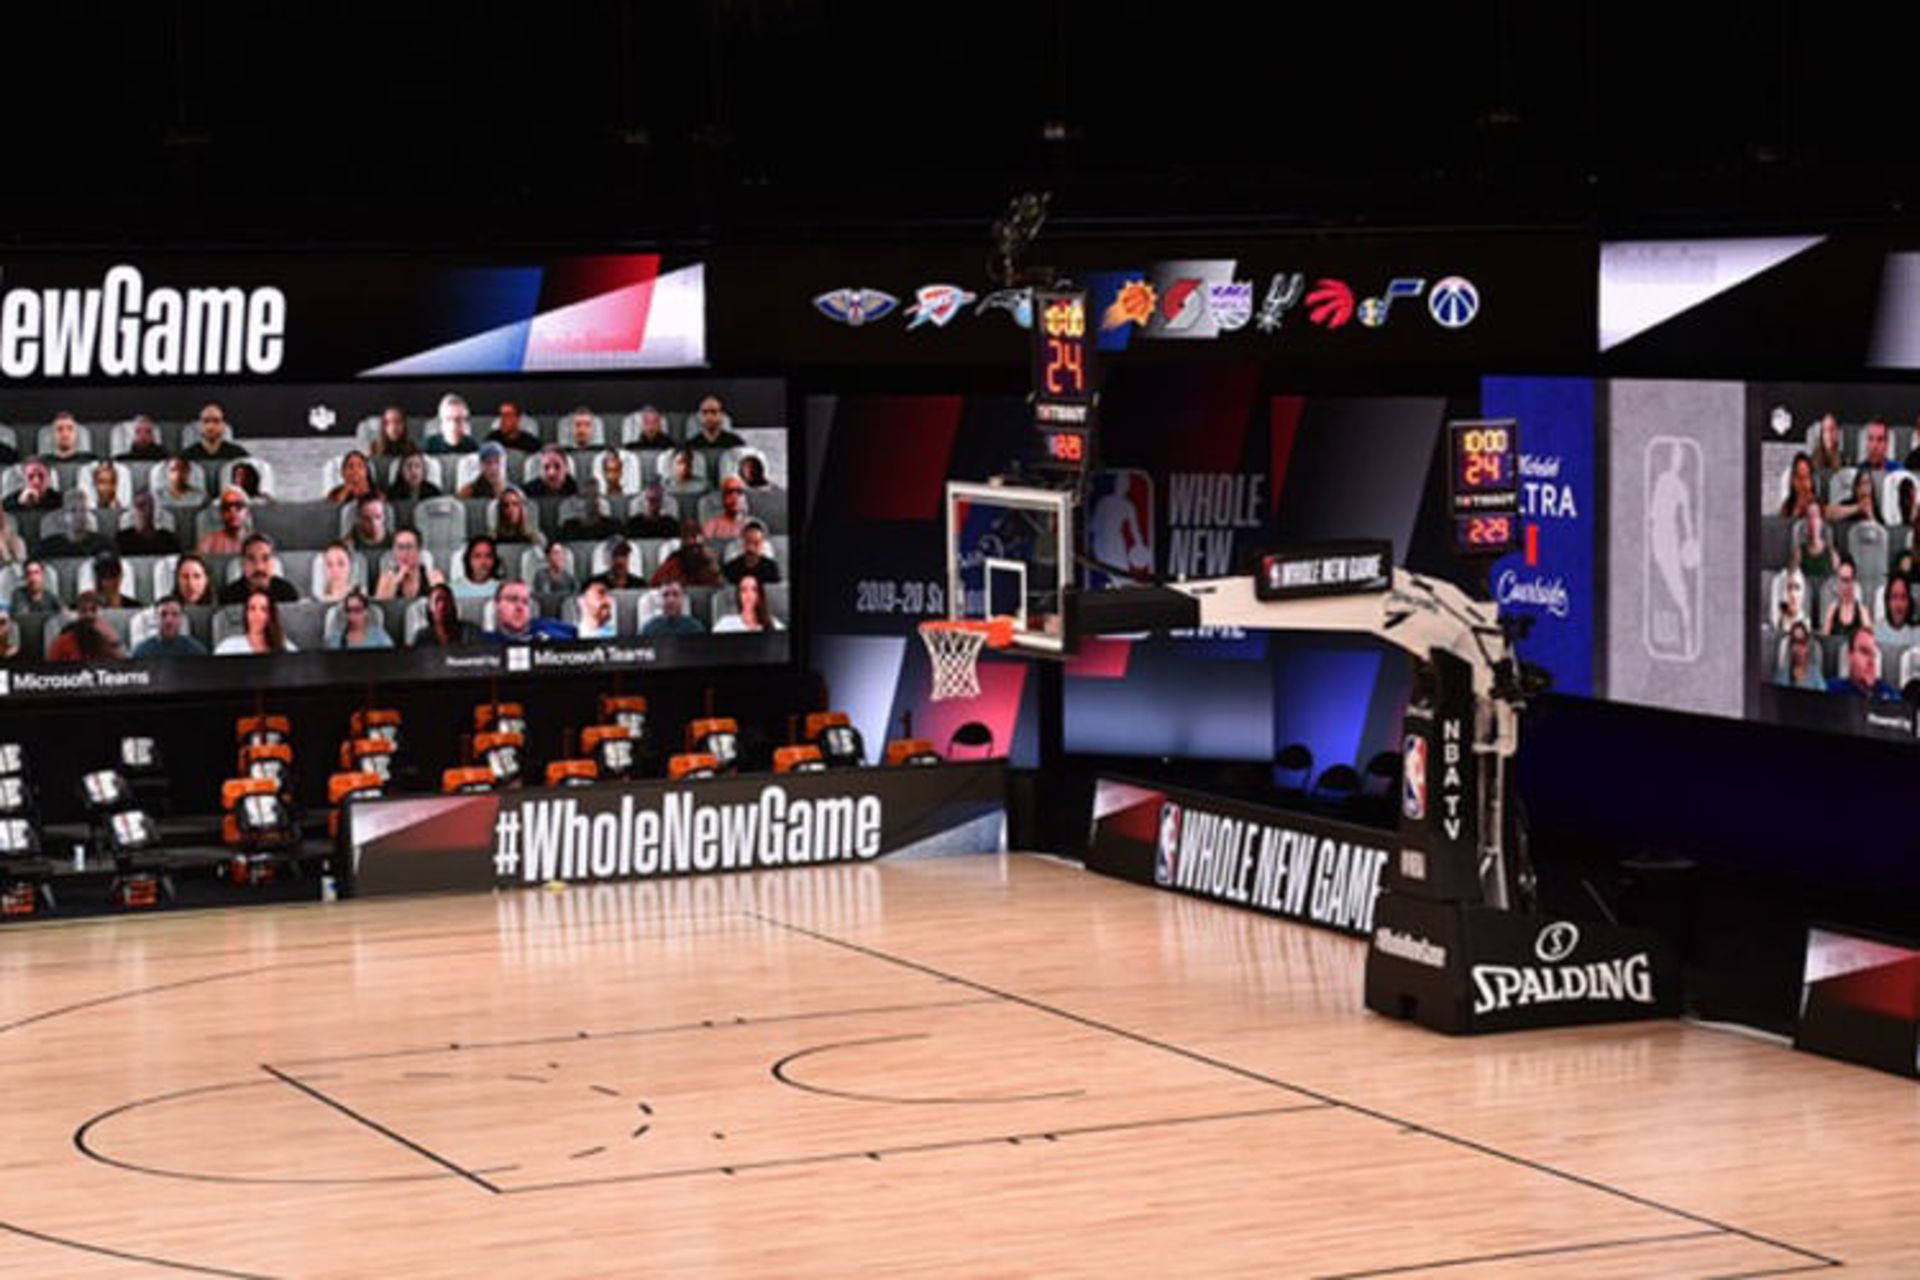 حضور مجازی طرفداران بسکتبال با مایکروسافت تیمز در مسابقات NBA